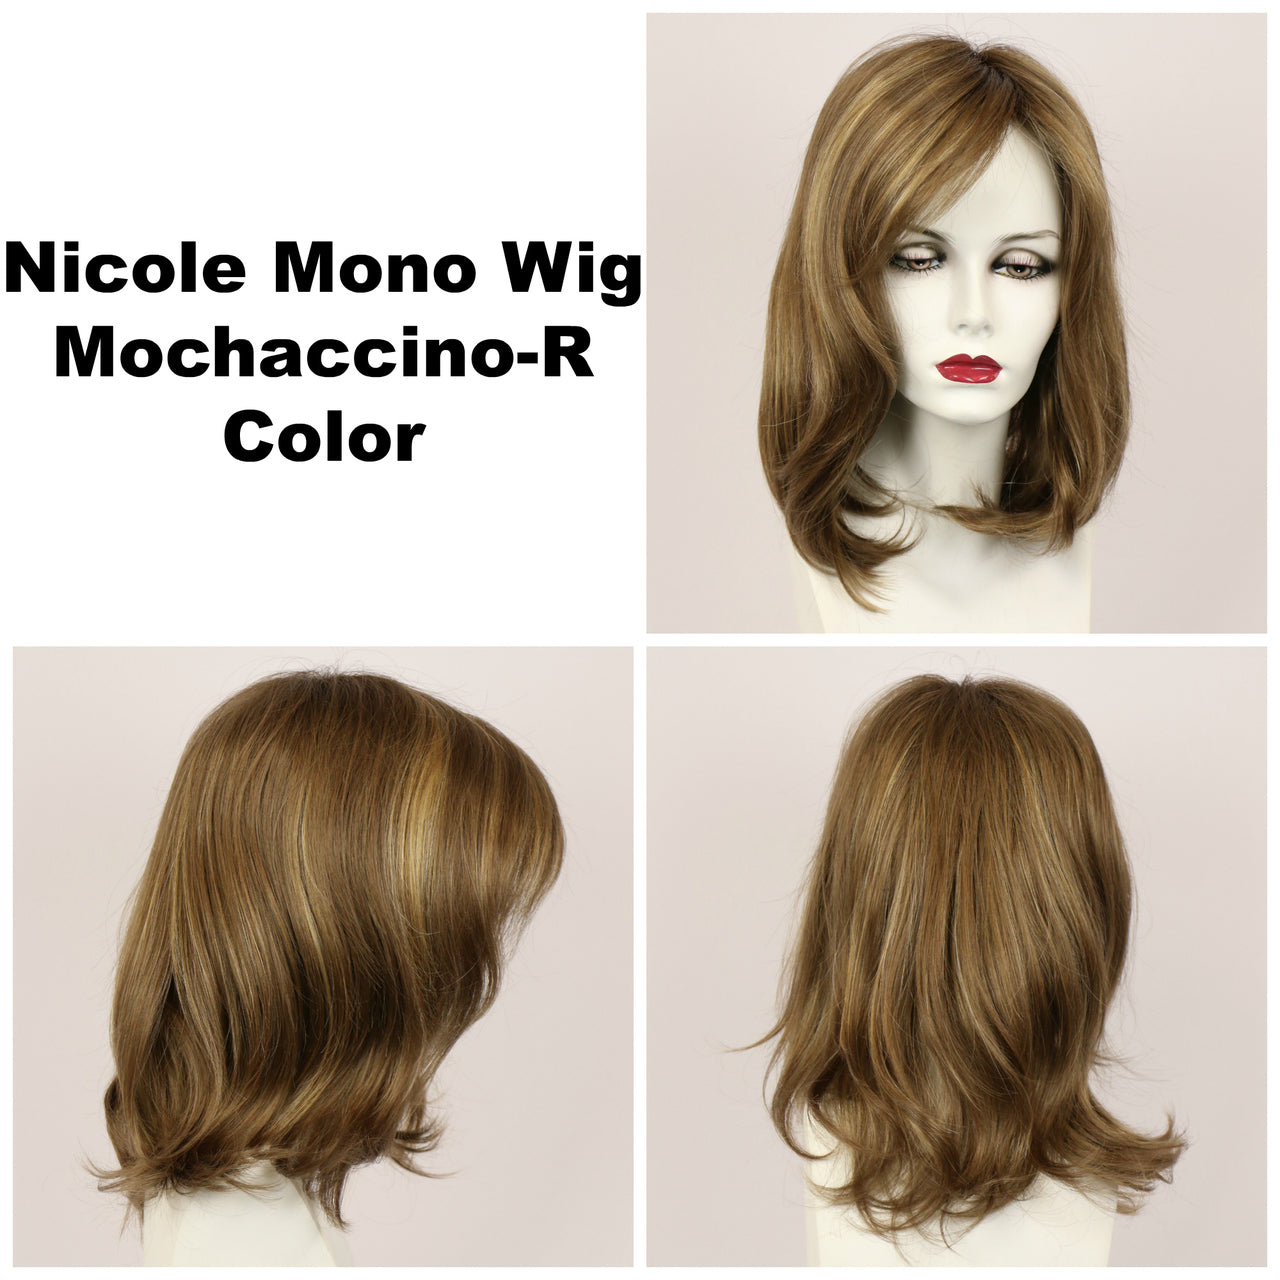 Mochaccino-R / Nicole Monofilament w/ Roots / Medium Wig